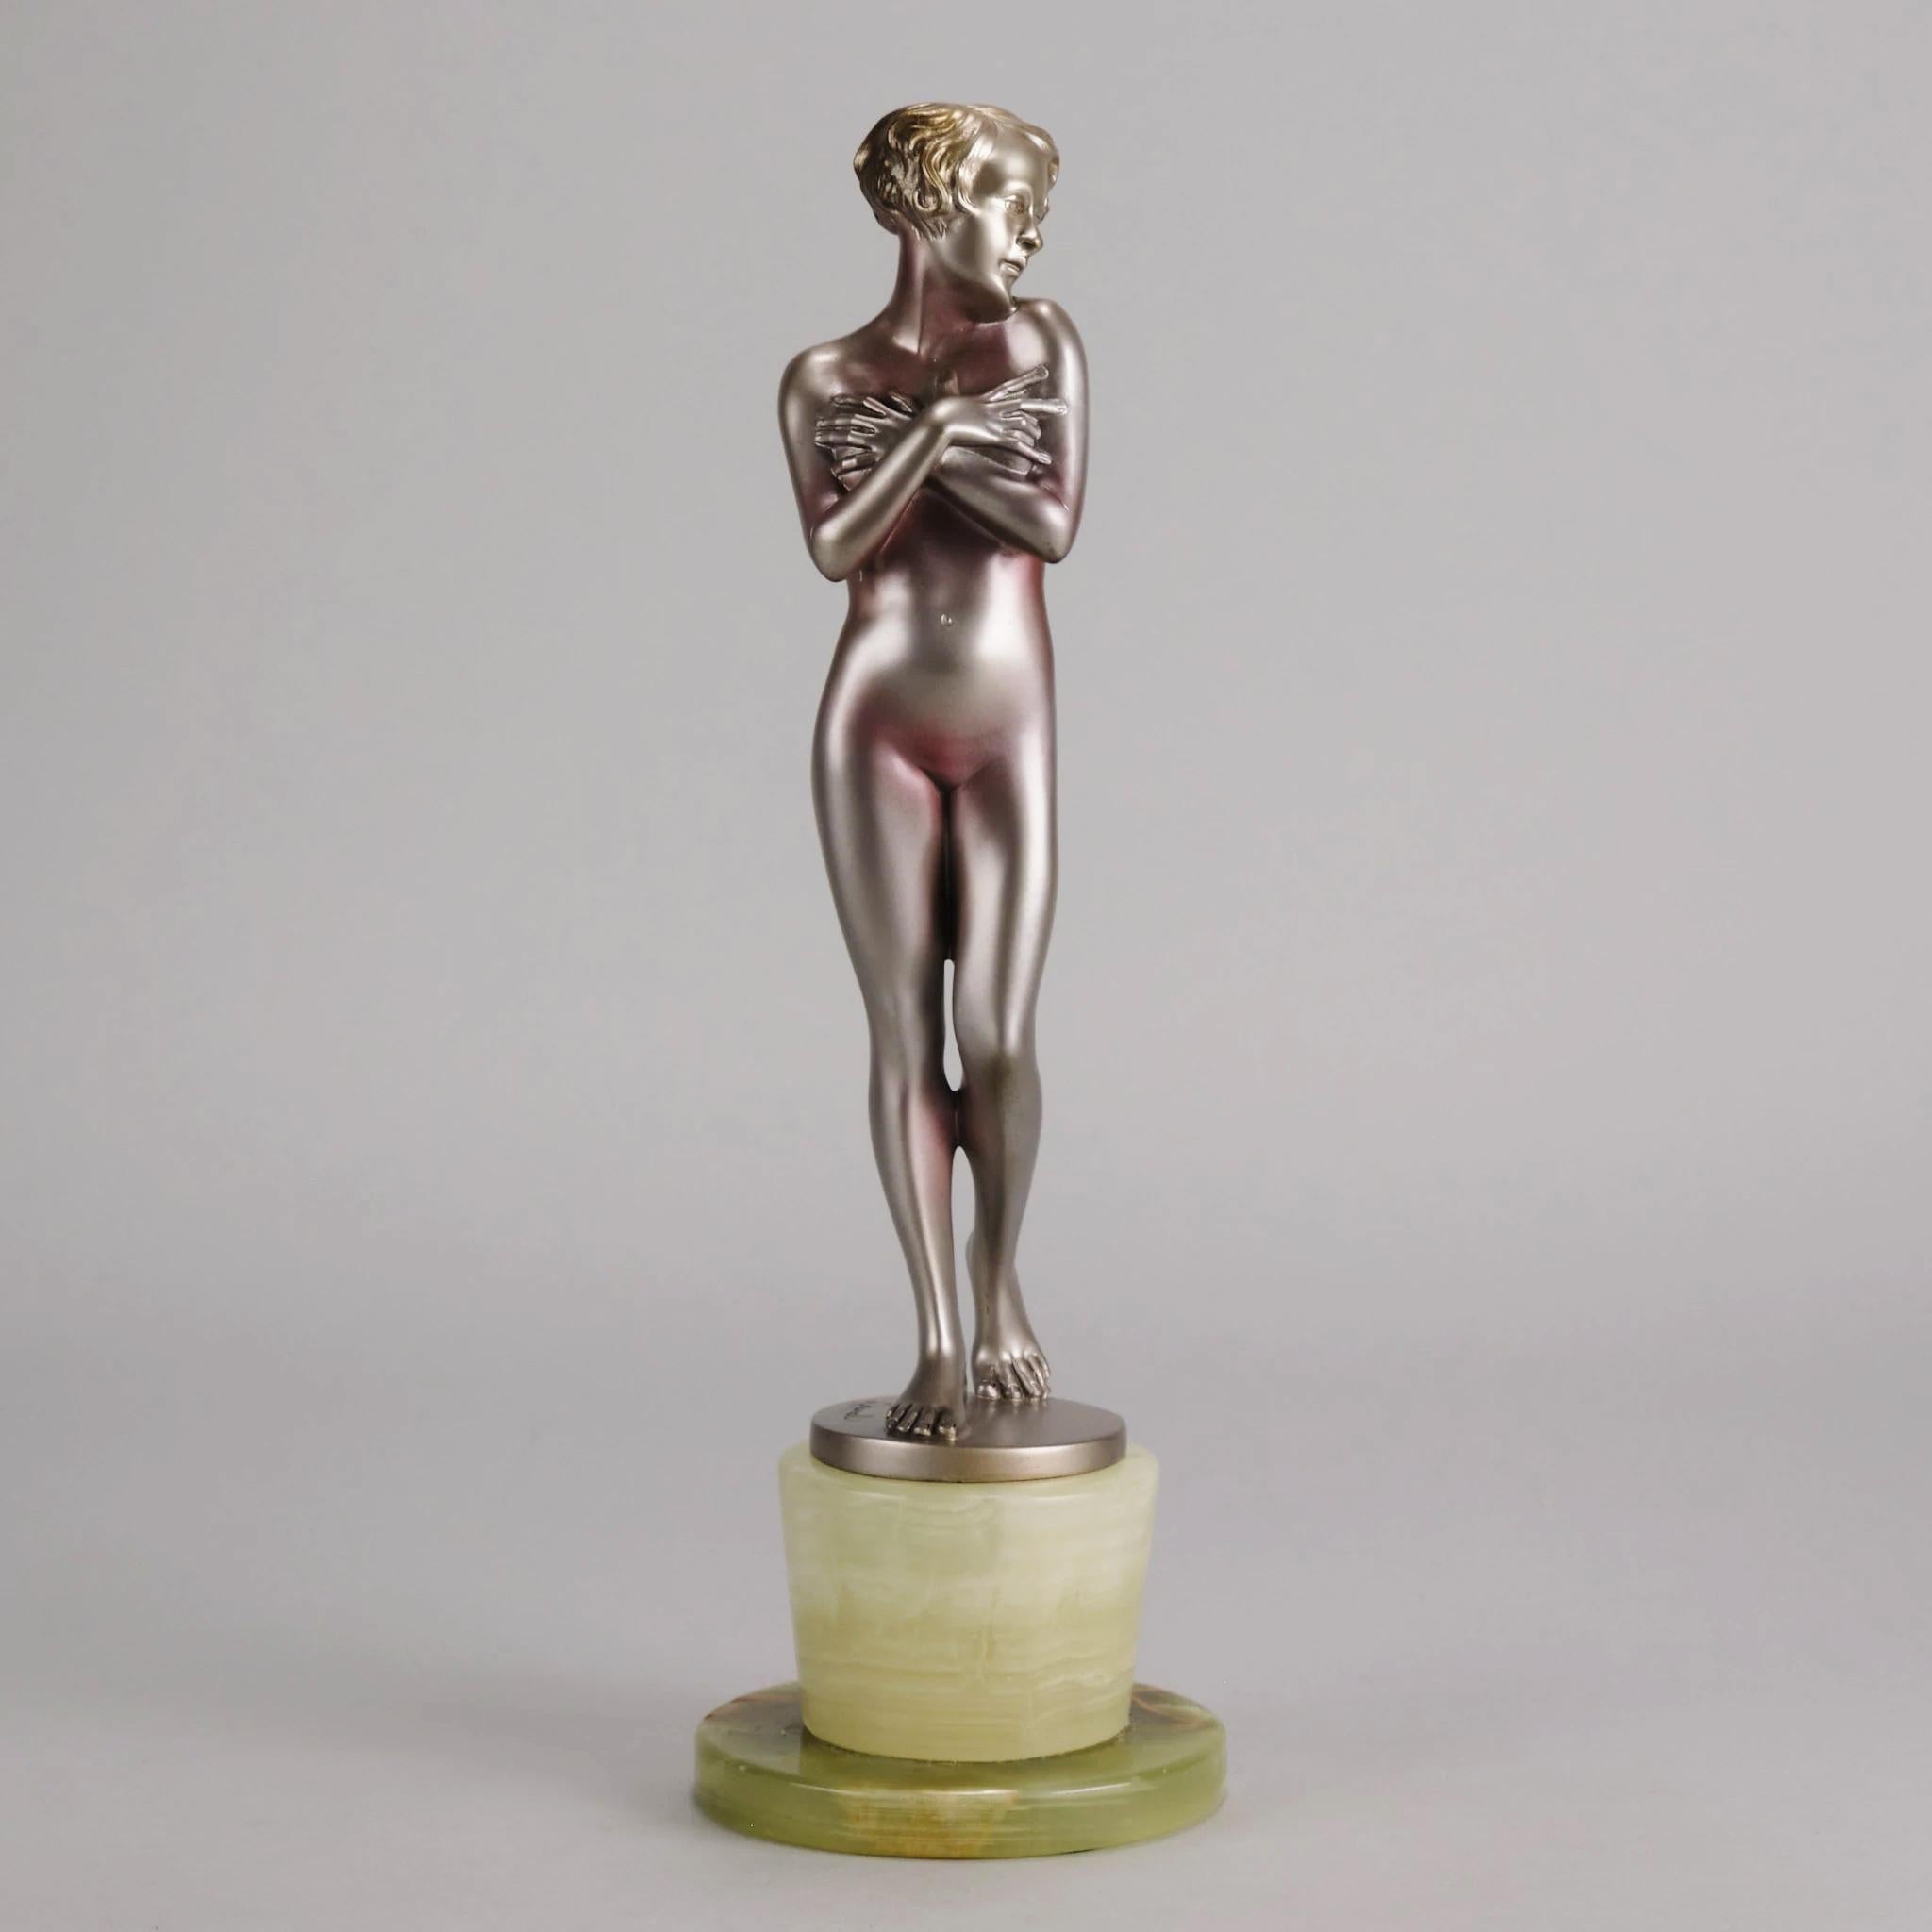 Une excellente figurine Art Déco du début du 20ème siècle en bronze peint à froid d'une beauté nue assise sur des marches en serrant sa jambe. La surface présente de belles couleurs et de fins détails finis à la main. Elle repose sur une base en